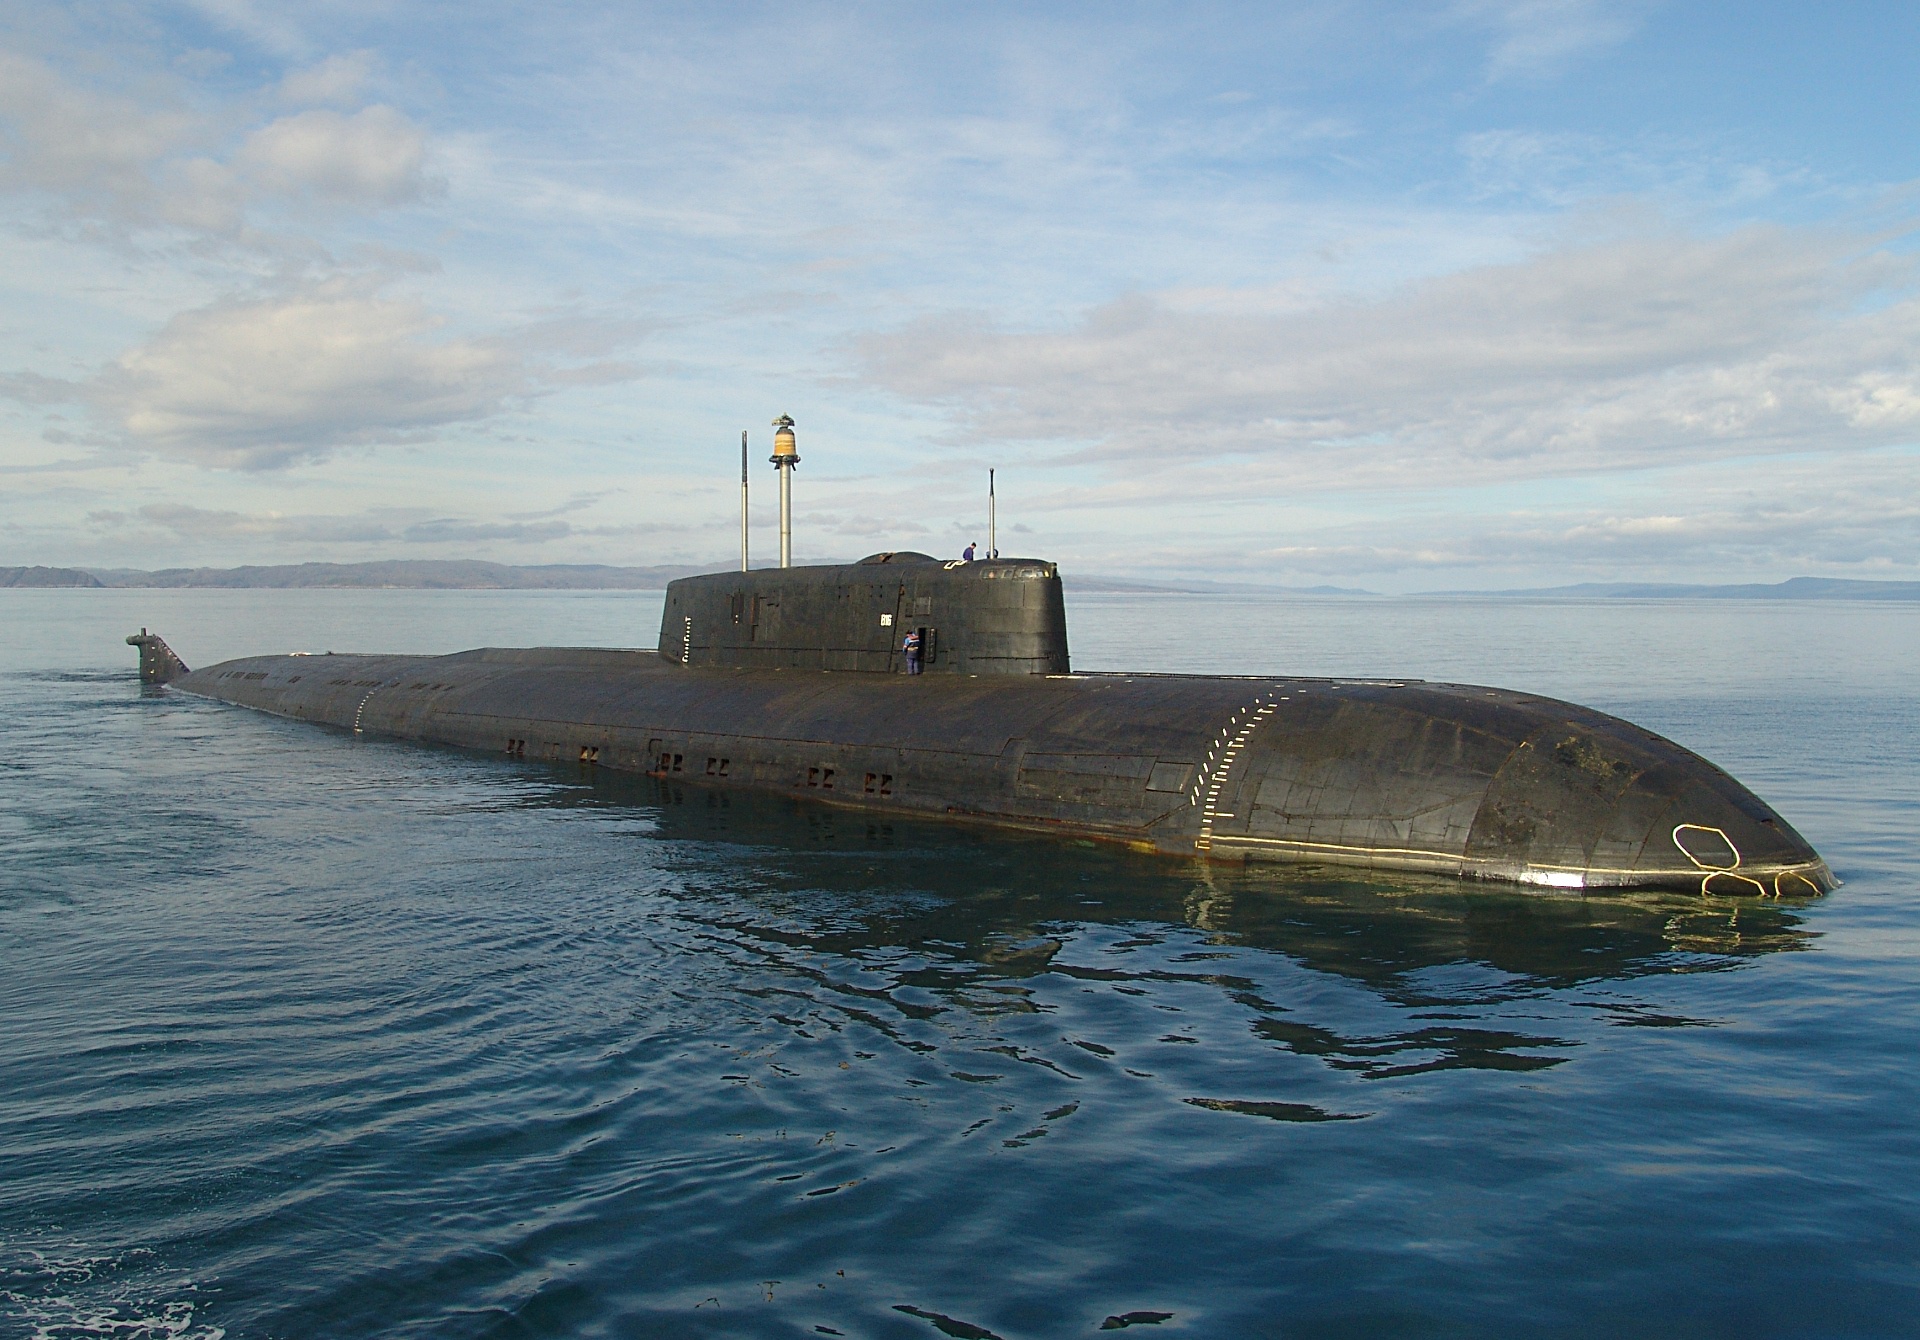 Пл ка. Подлодка 949а. Подводные лодки проекта 667бдрм «Дельфин». АПЛ проект 949 гранит. Атомная подводная лодка РФ.